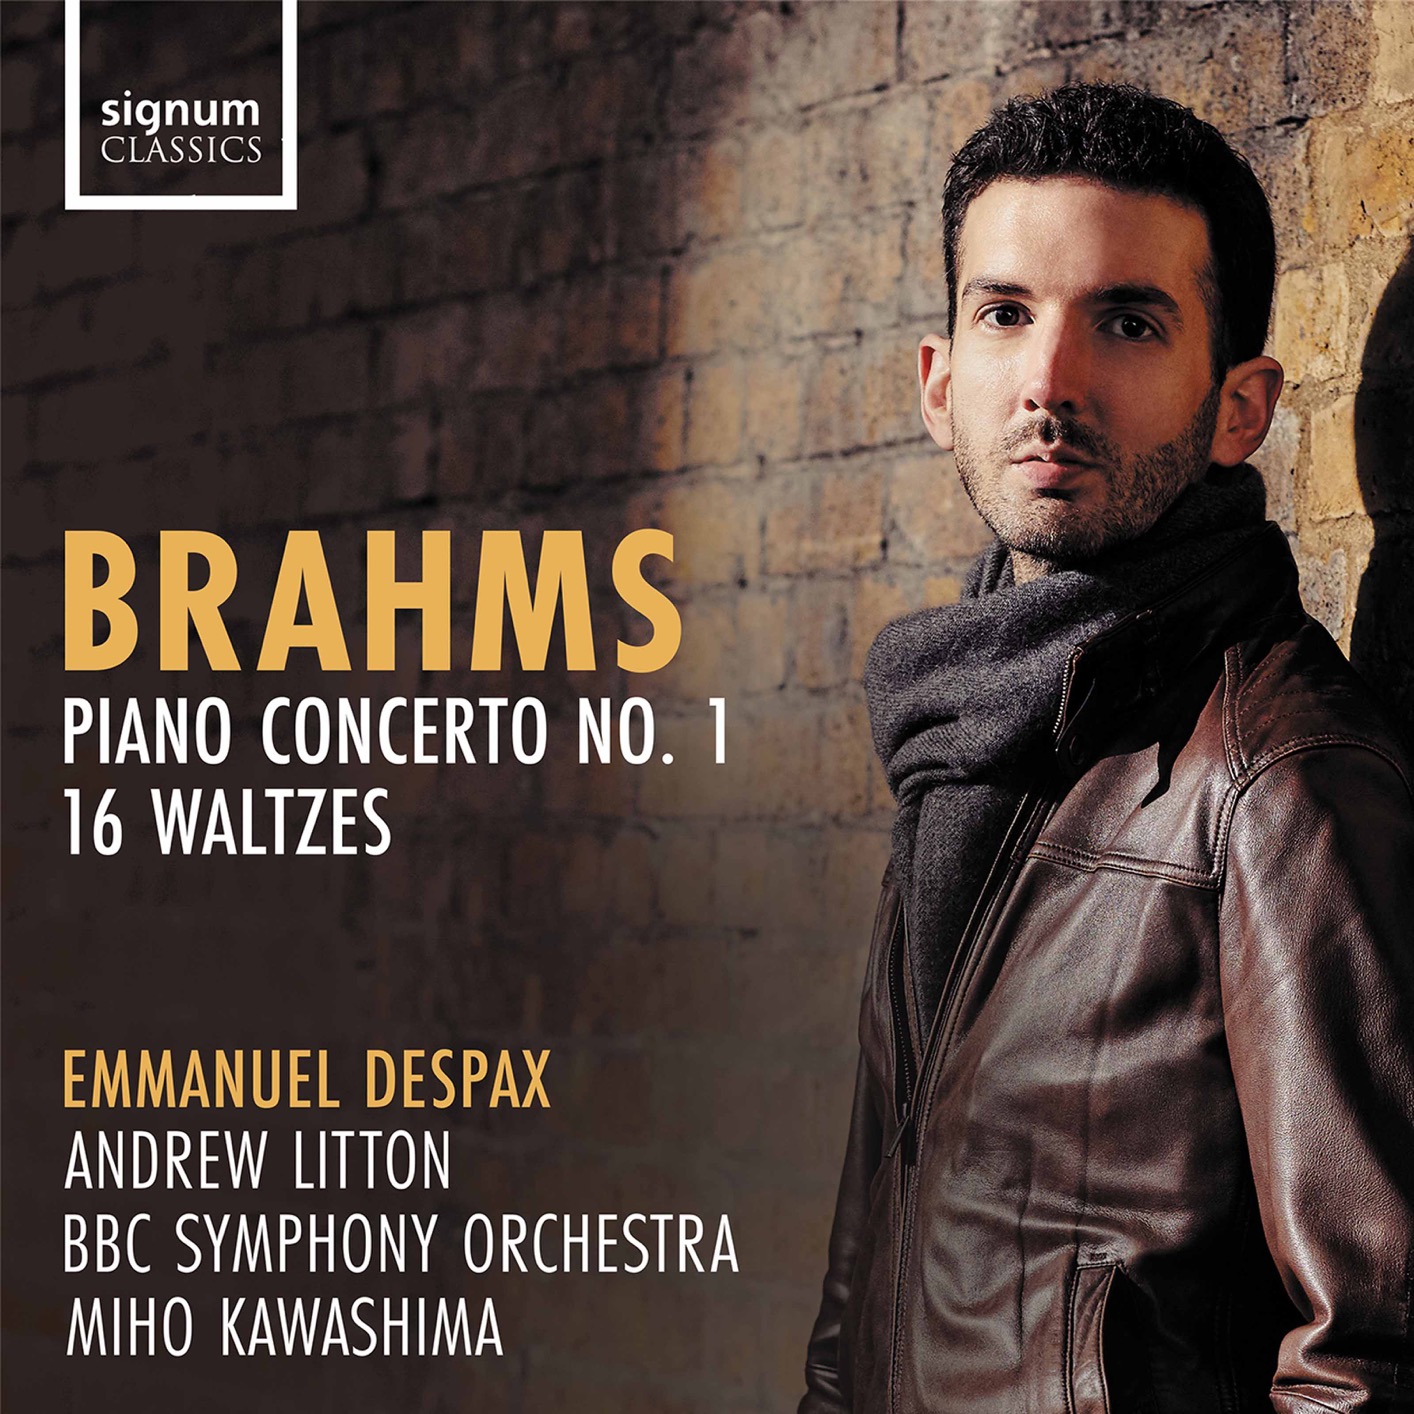 Emmanuel Despax, BBC Symphony Orchestra & Andrew Litton - Brahms - Piano Concerto No. 1 Op. 15, 16 Waltzes Op. 39 (2021) [FLAC 24bit/96kHz]